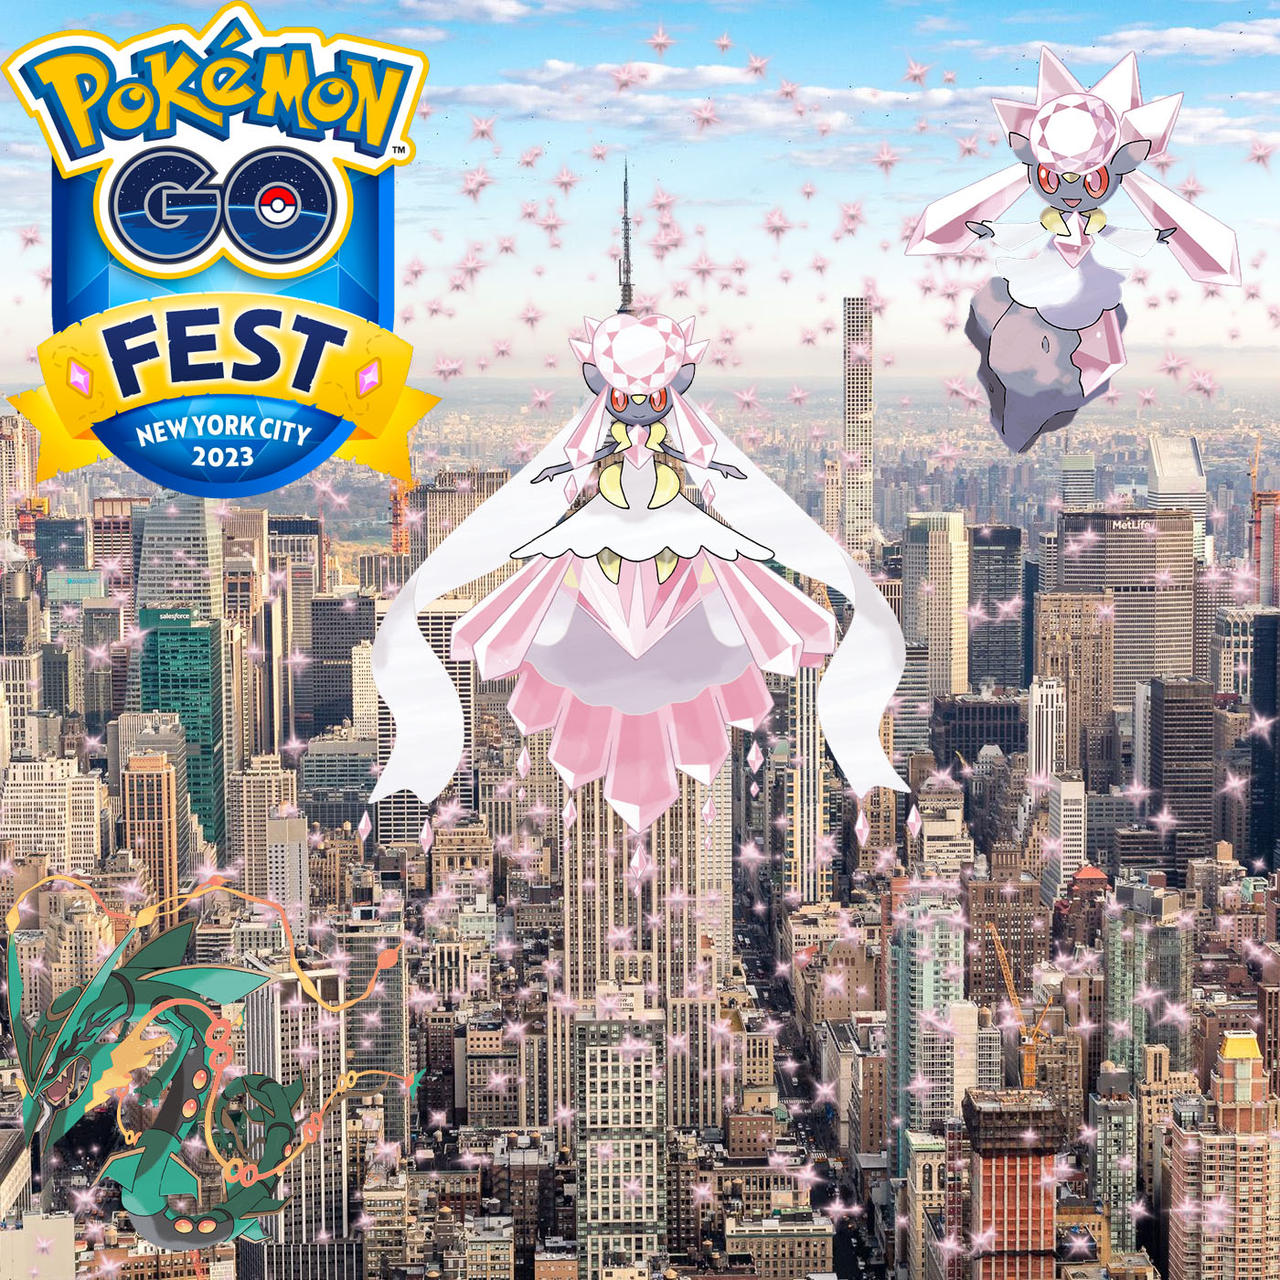 Pokémon Go Fest 2023 details, including new Mythical Pokémon, announced -  Polygon